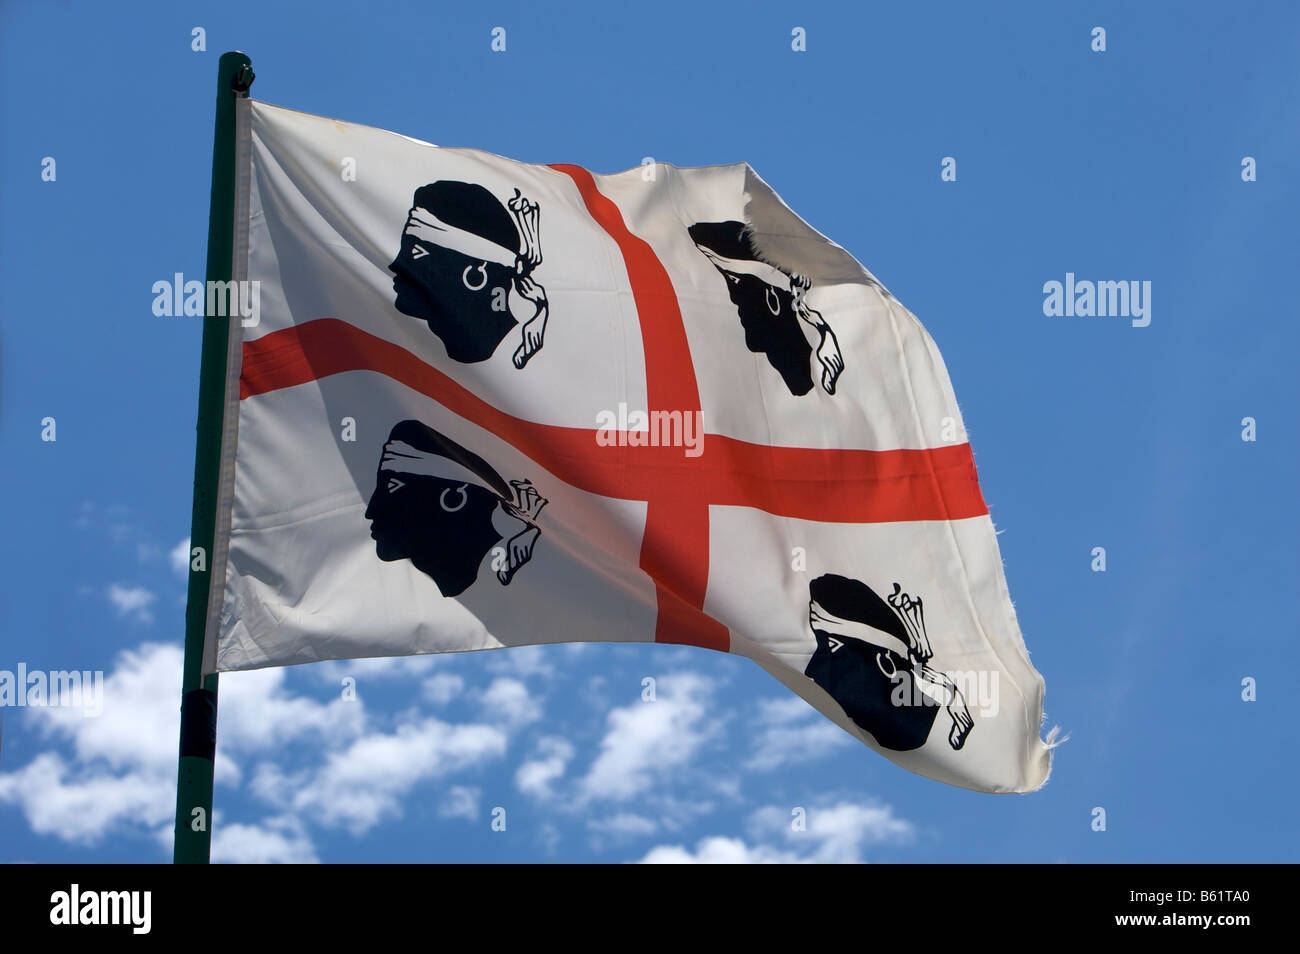 Sardinian flag, Sardinia, Italy, Europe Stock Photo